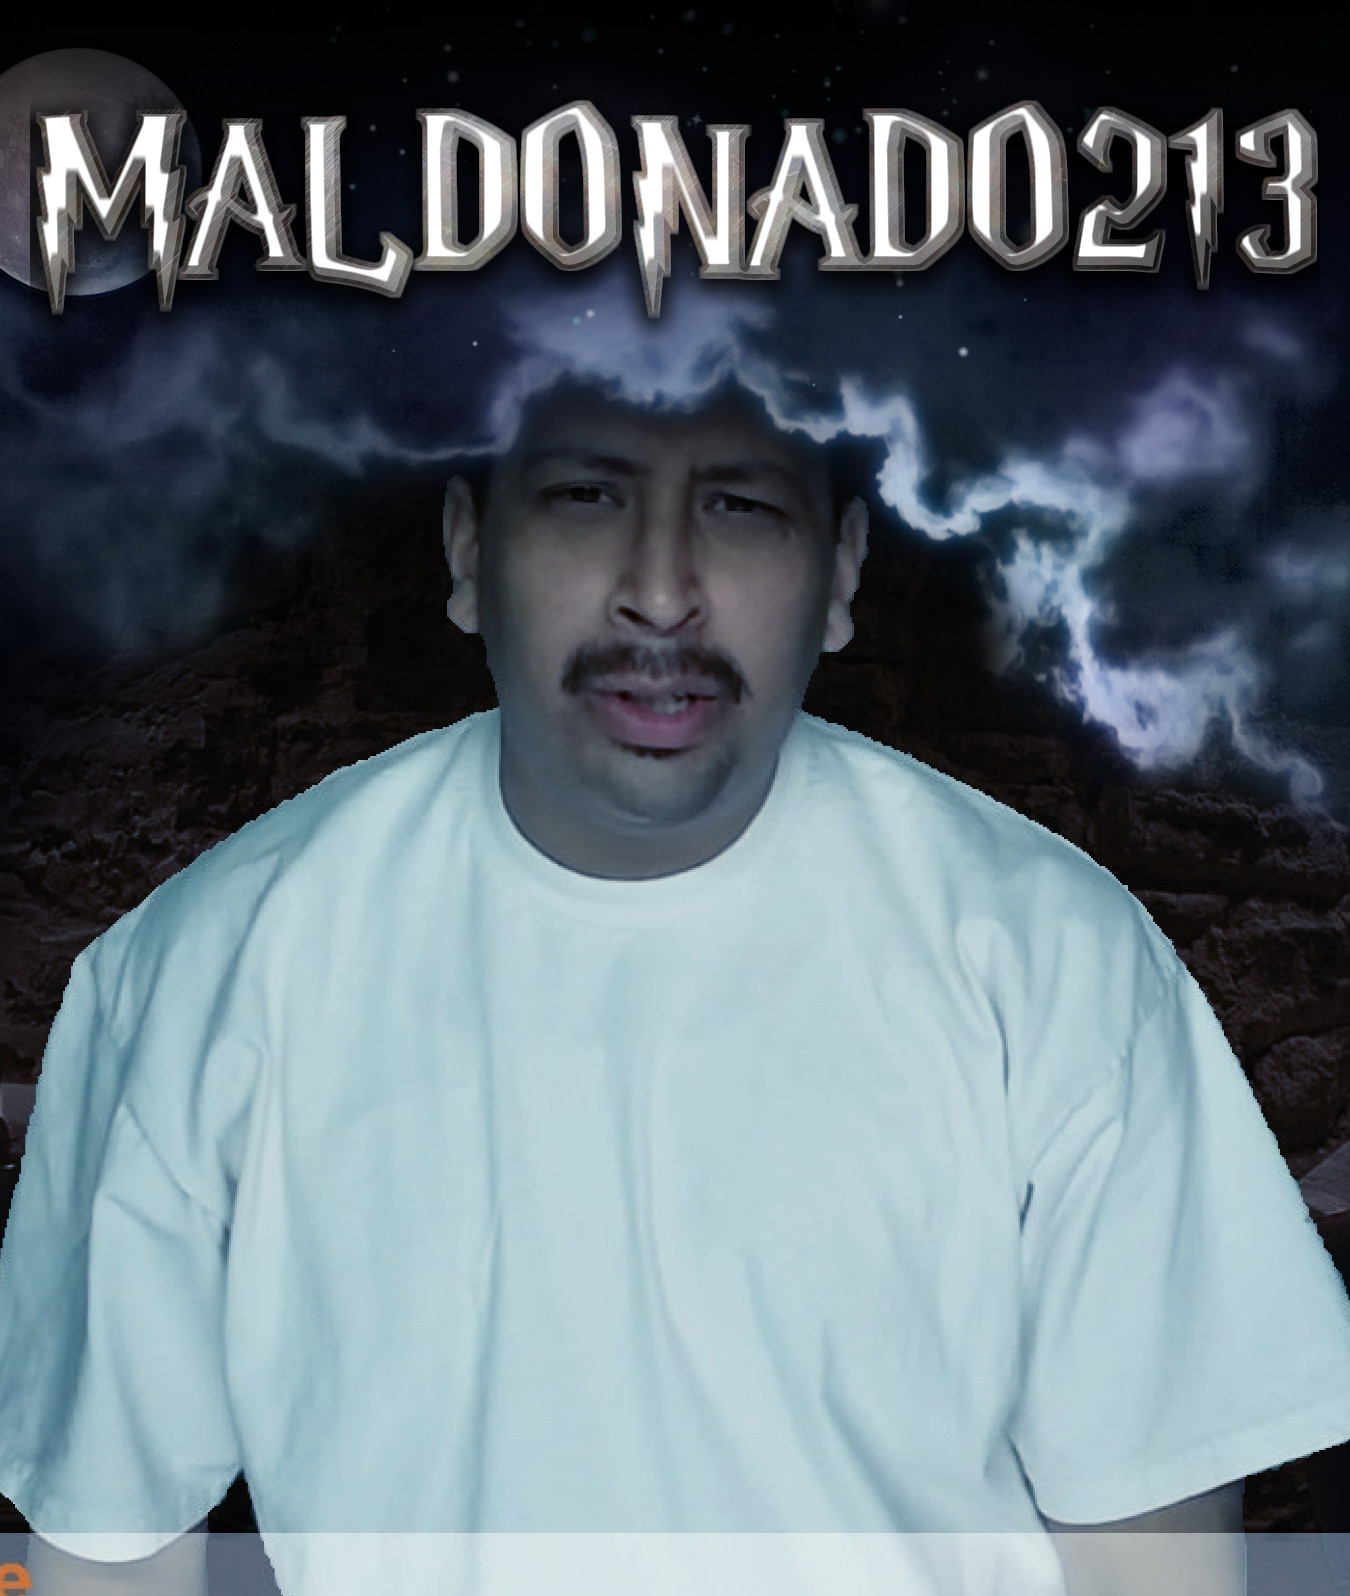 maldonado213 Random Pictures From The Interweb 363